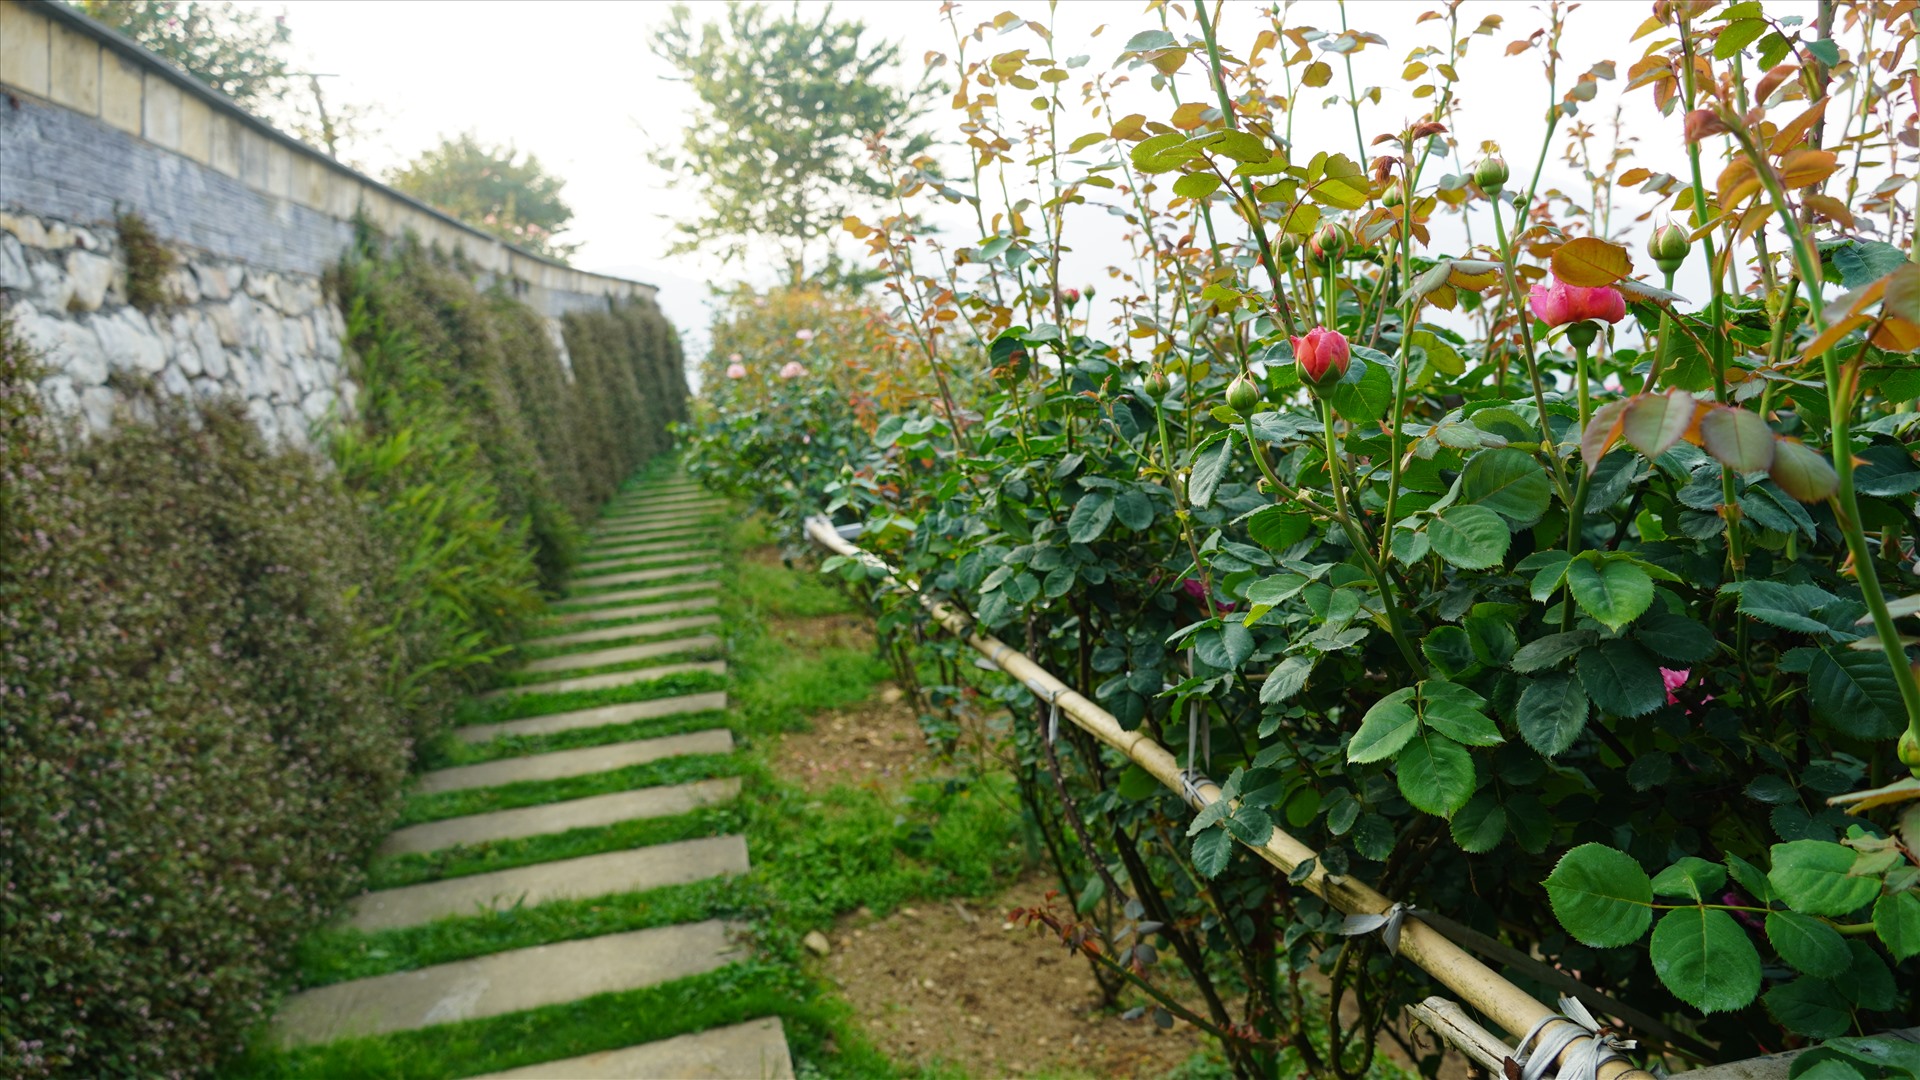 Vườn hồng cổ Sa Pa có cảnh quan thiên nhiên tươi đẹp, bao quát trọn vẹn vẻ đẹp của núi rừng và Sa Pa. Ảnh: Phạm Quỳnh